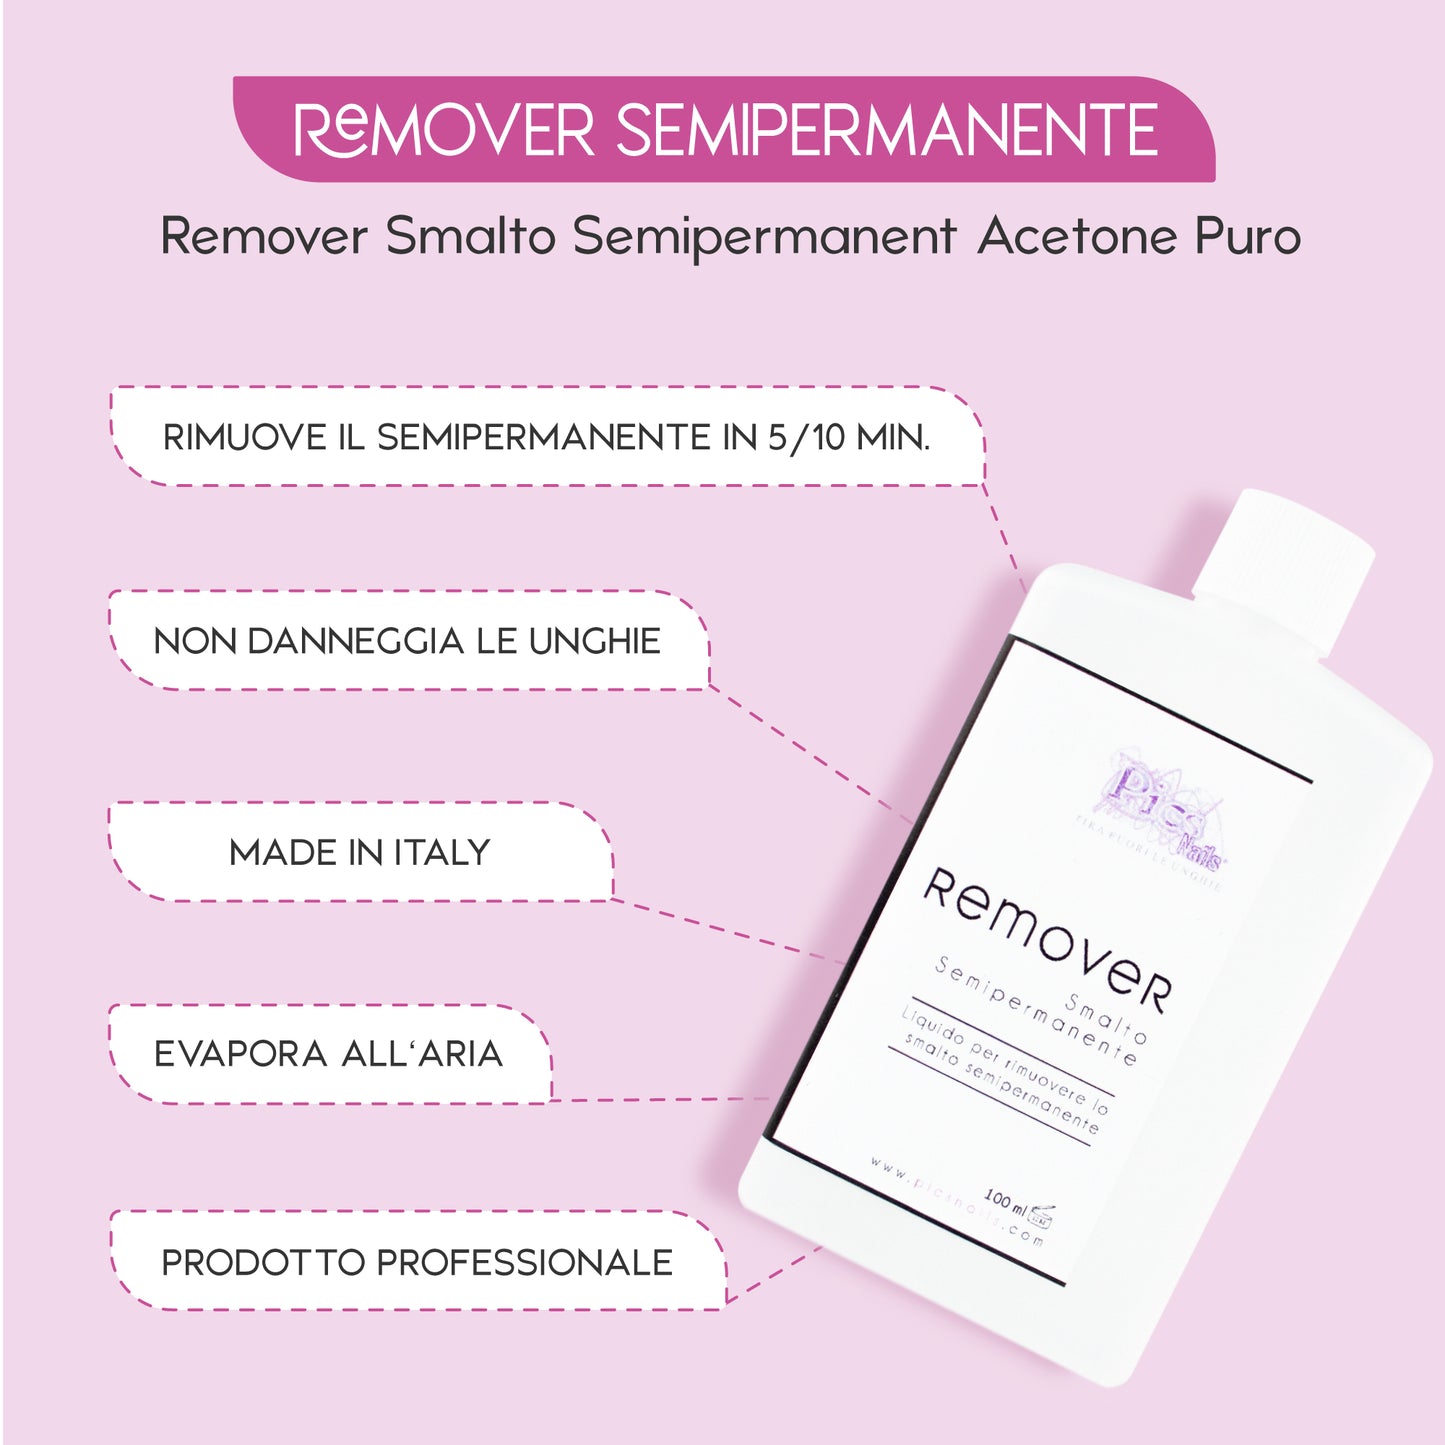 Remover Smalto Semipermanente Acetone Puro 100 ml